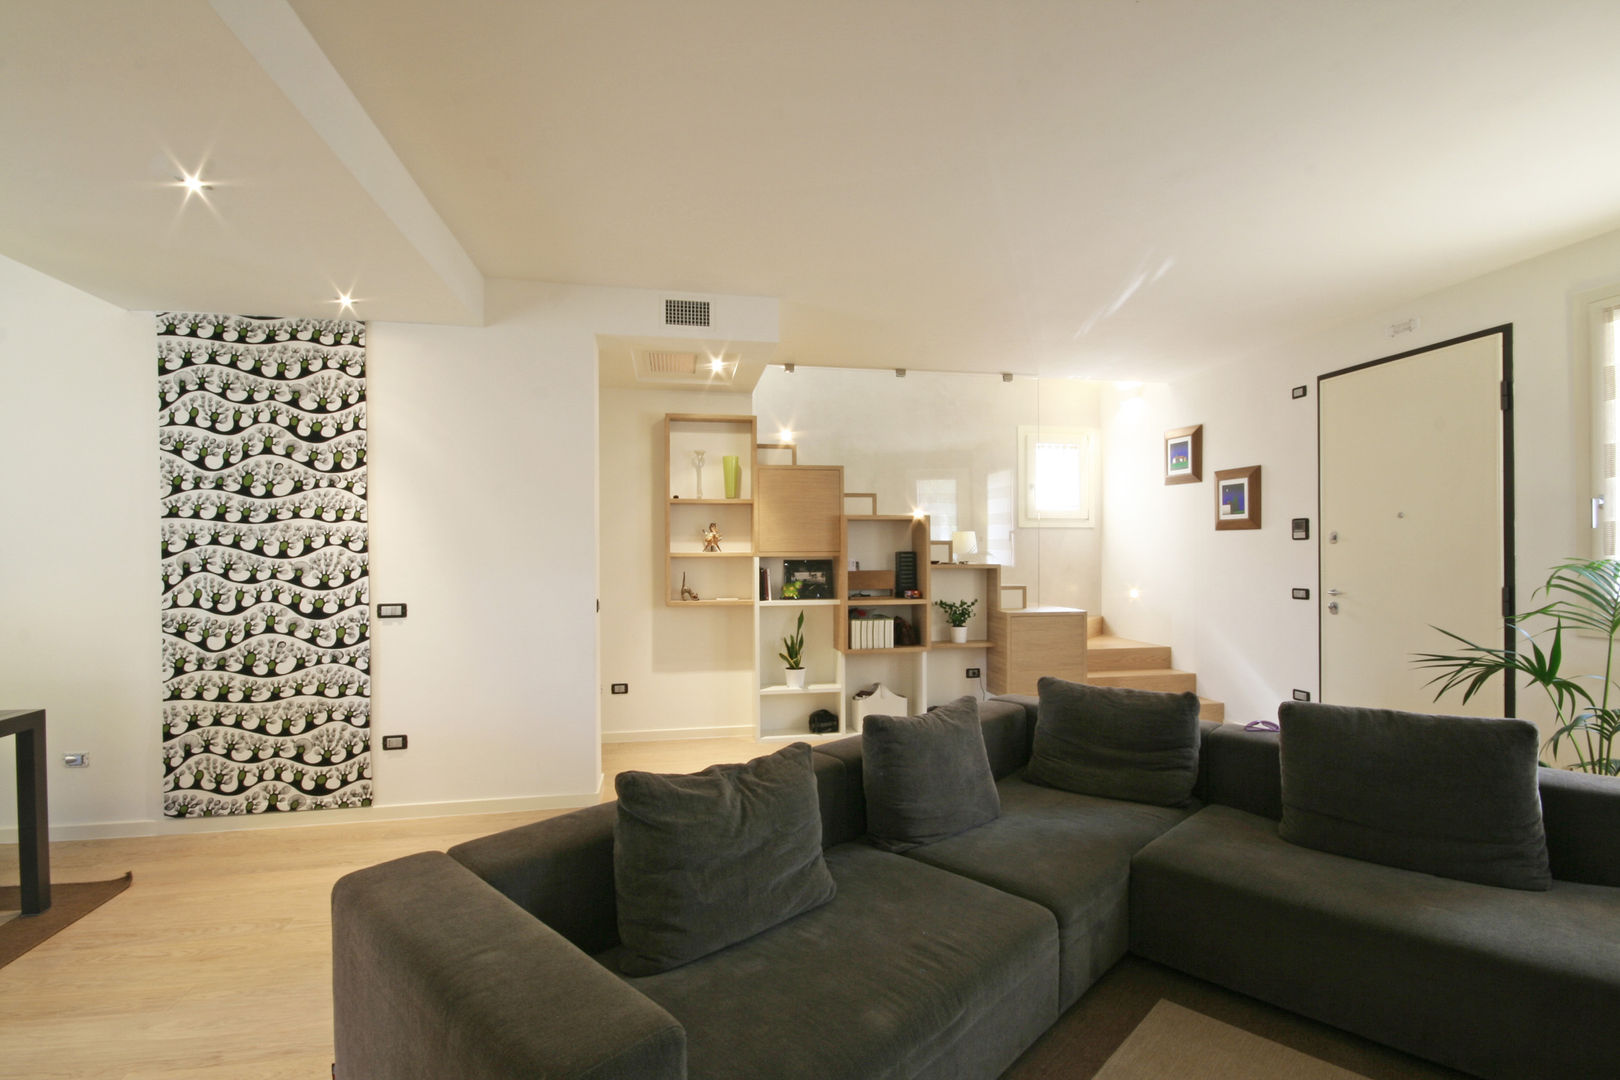 House in Marostica, Diego Gnoato Architect Diego Gnoato Architect غرفة المعيشة خزانات التلفزيون الجانبية